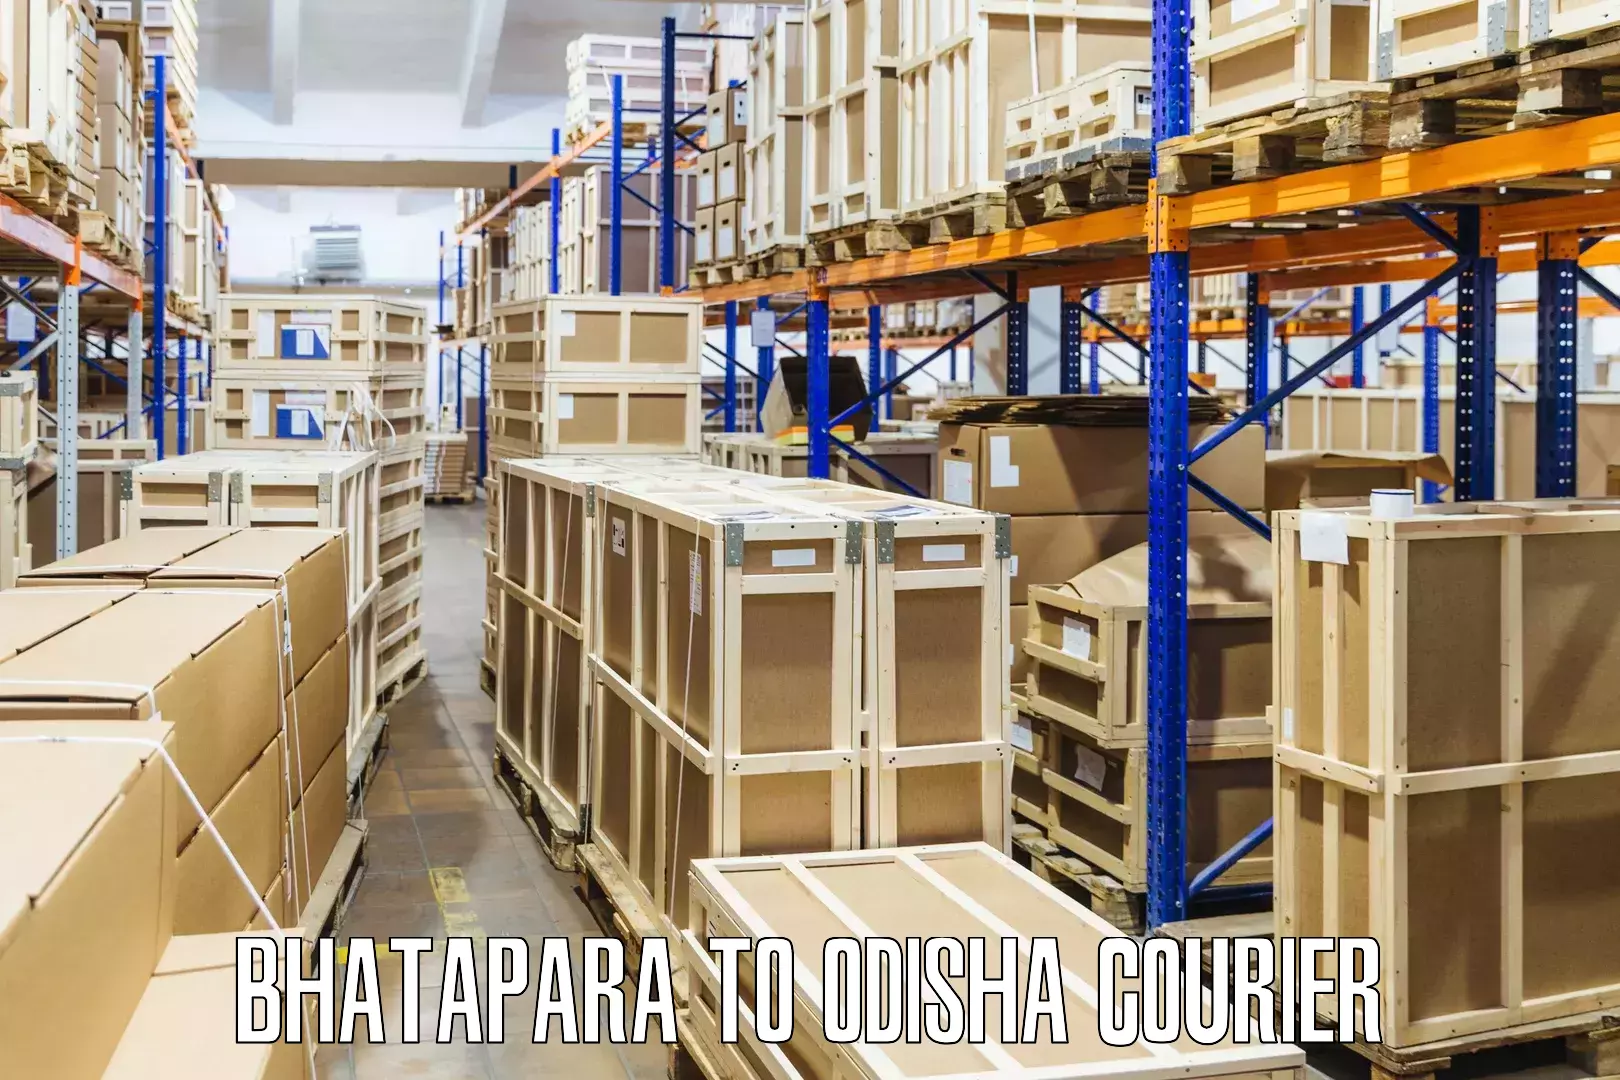 Track and trace shipping Bhatapara to Patkura